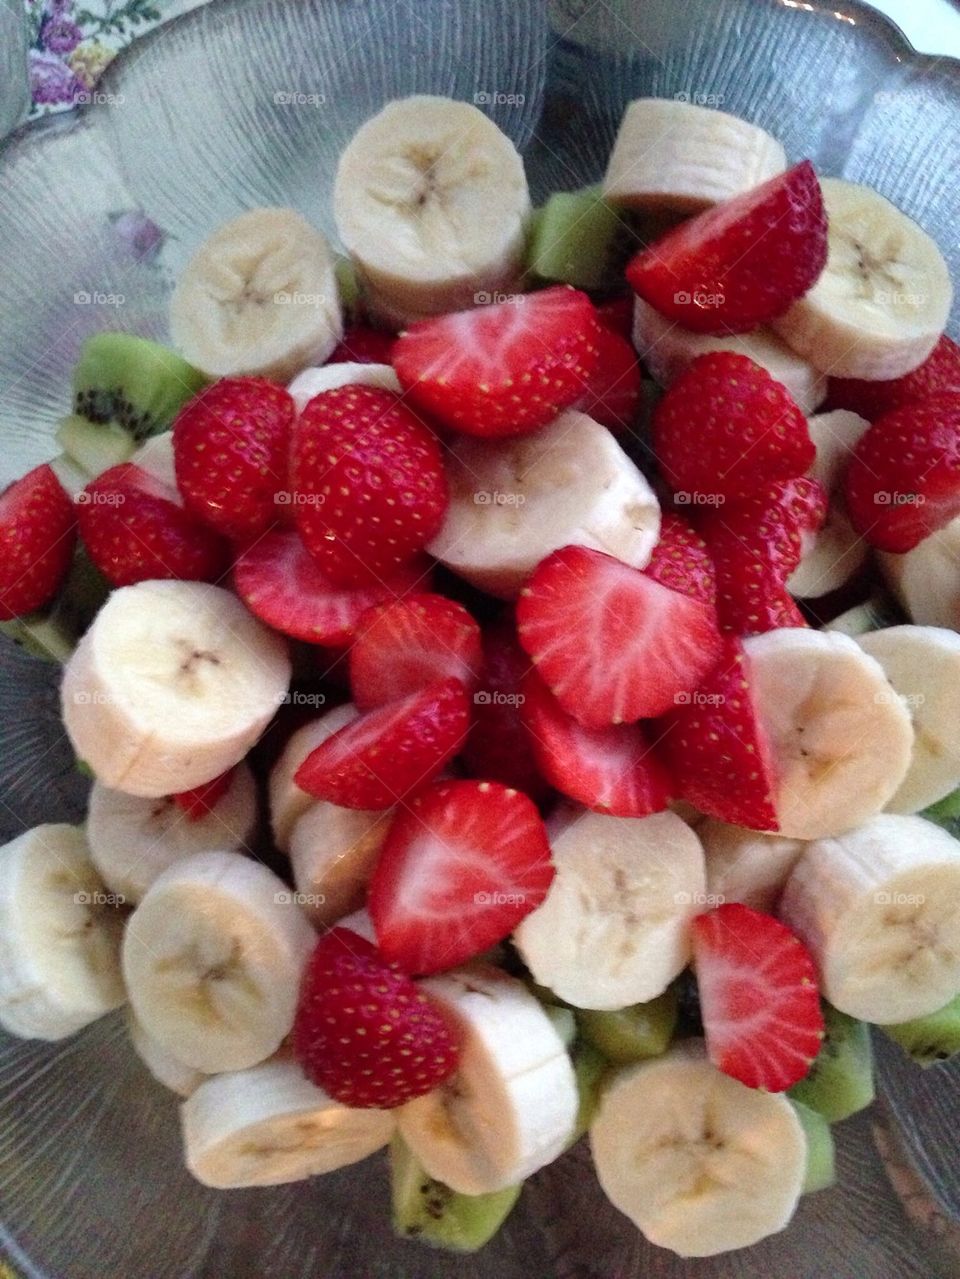 Fruity.